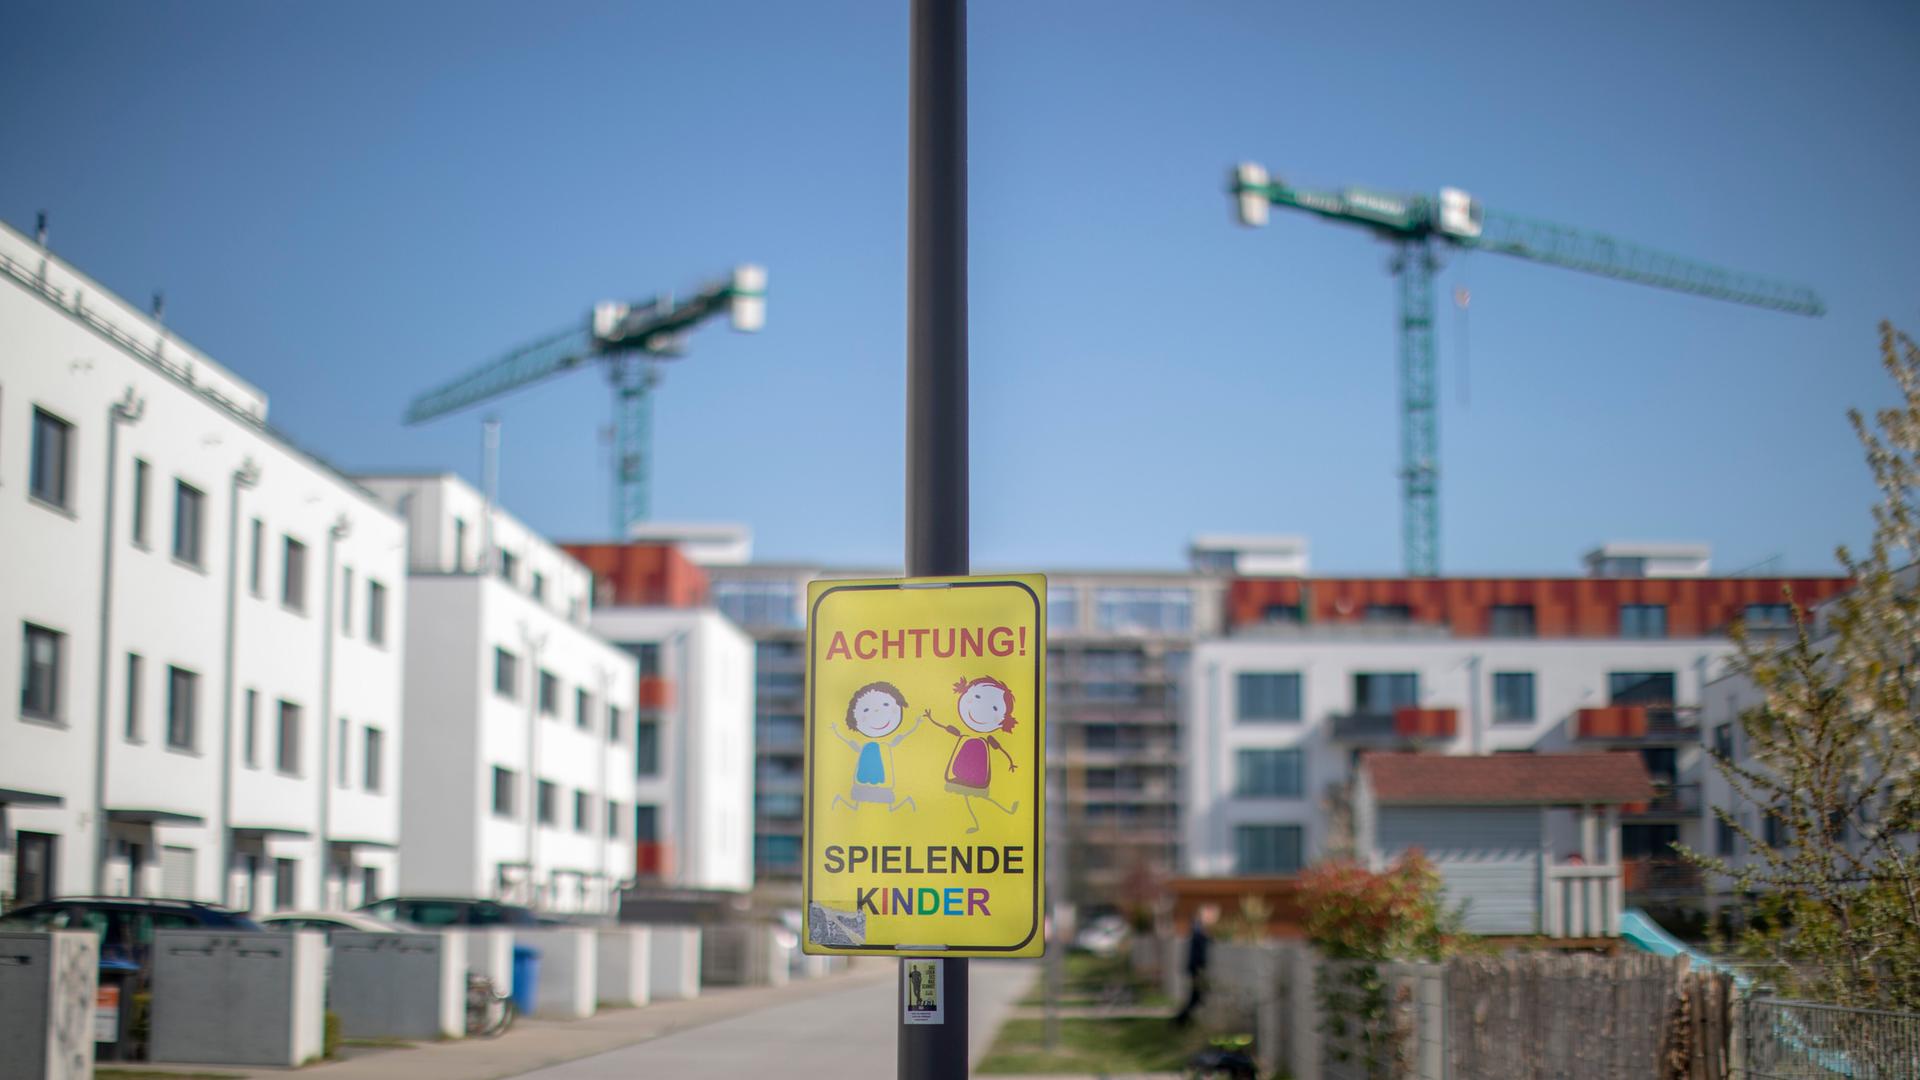 Neu errichtete Häuser stehen in einem Neubaugebiet in der Stadt Berlin. Ein Hinweisschild warnt vor spielenden Kindern, im Hintergrund ragen Baukräne in den Himmel